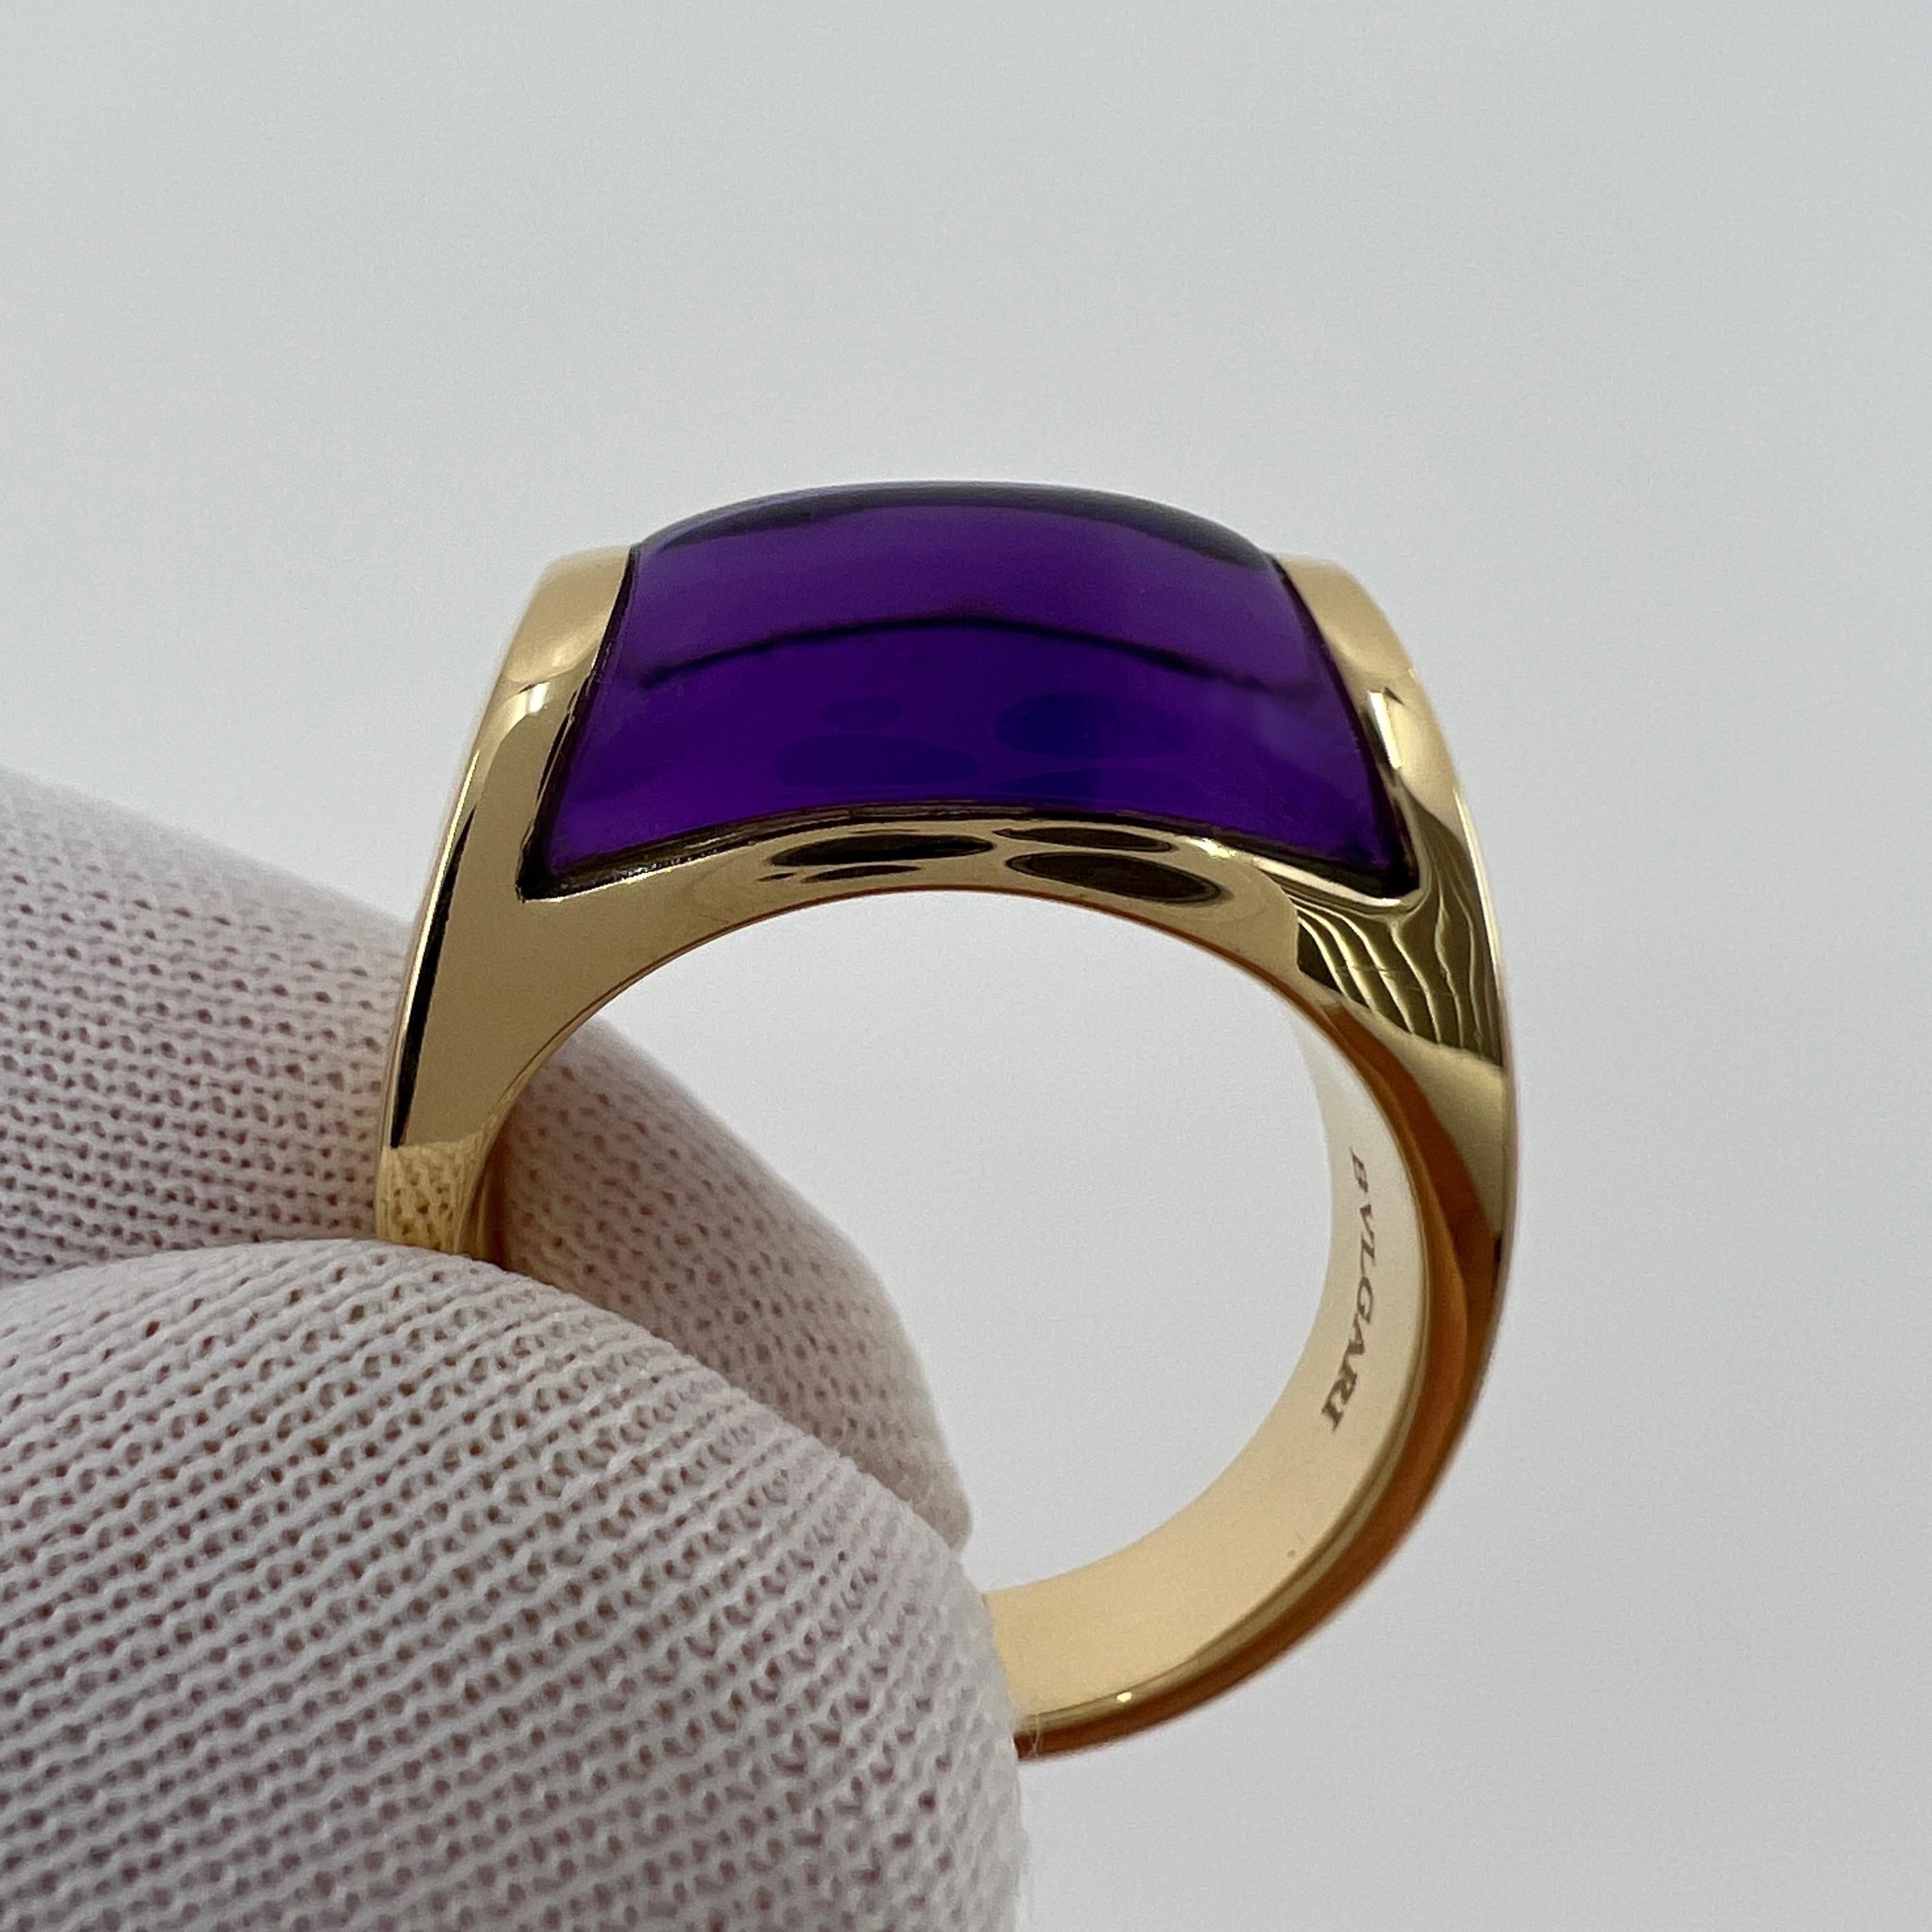 Rare Bvlgari Bulgari Tronchetto 18k Yellow Gold Purple Amethyst Ring with Box 1